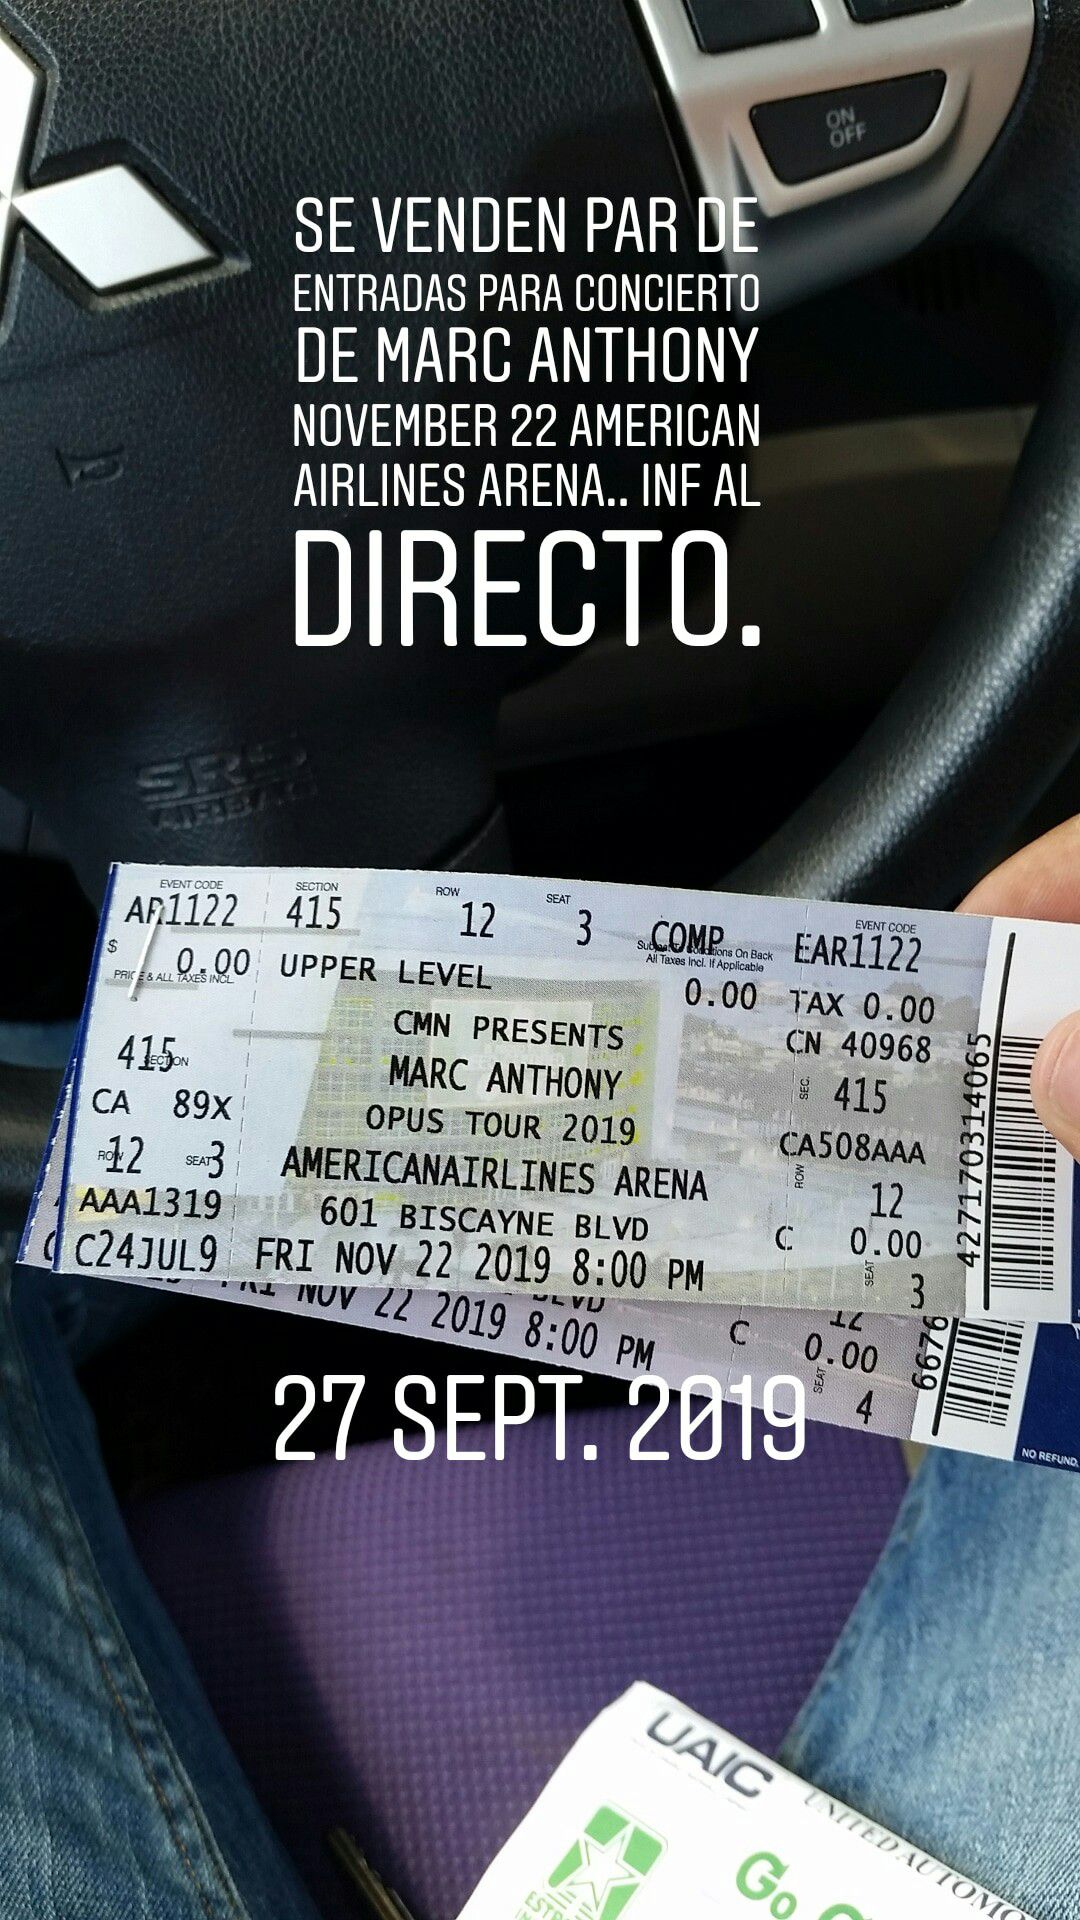 Entradas al concierto d marc anthony area 415 American airlines Arena November 22 ...